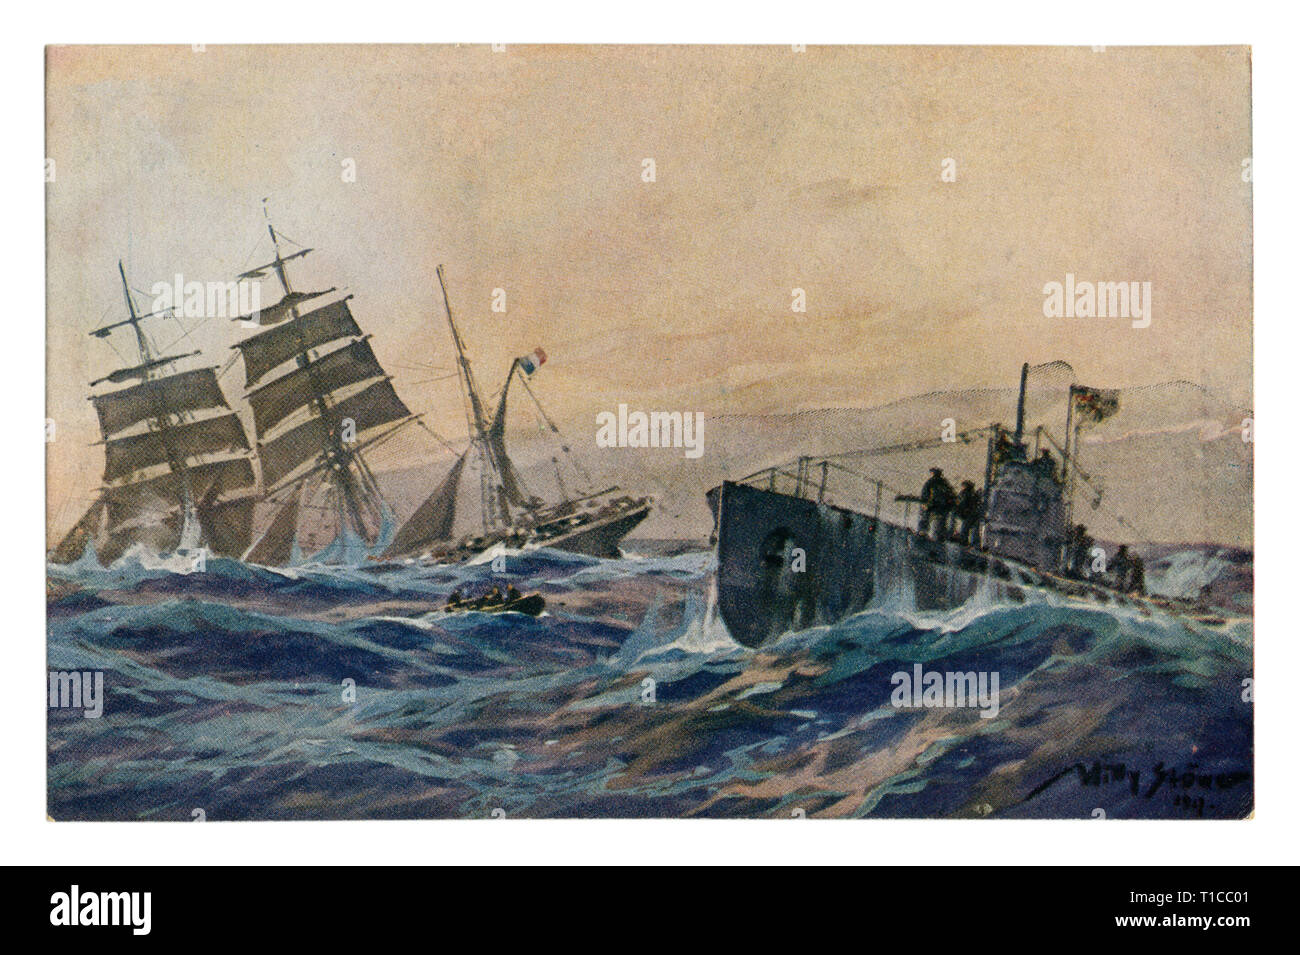 Carte postale historique allemand : écorce français coulé par un sous-marin allemand. L'équipage du voilier sur le bateau navigue à l'u-boot de la première guerre mondiale, 1914-1918. Banque D'Images